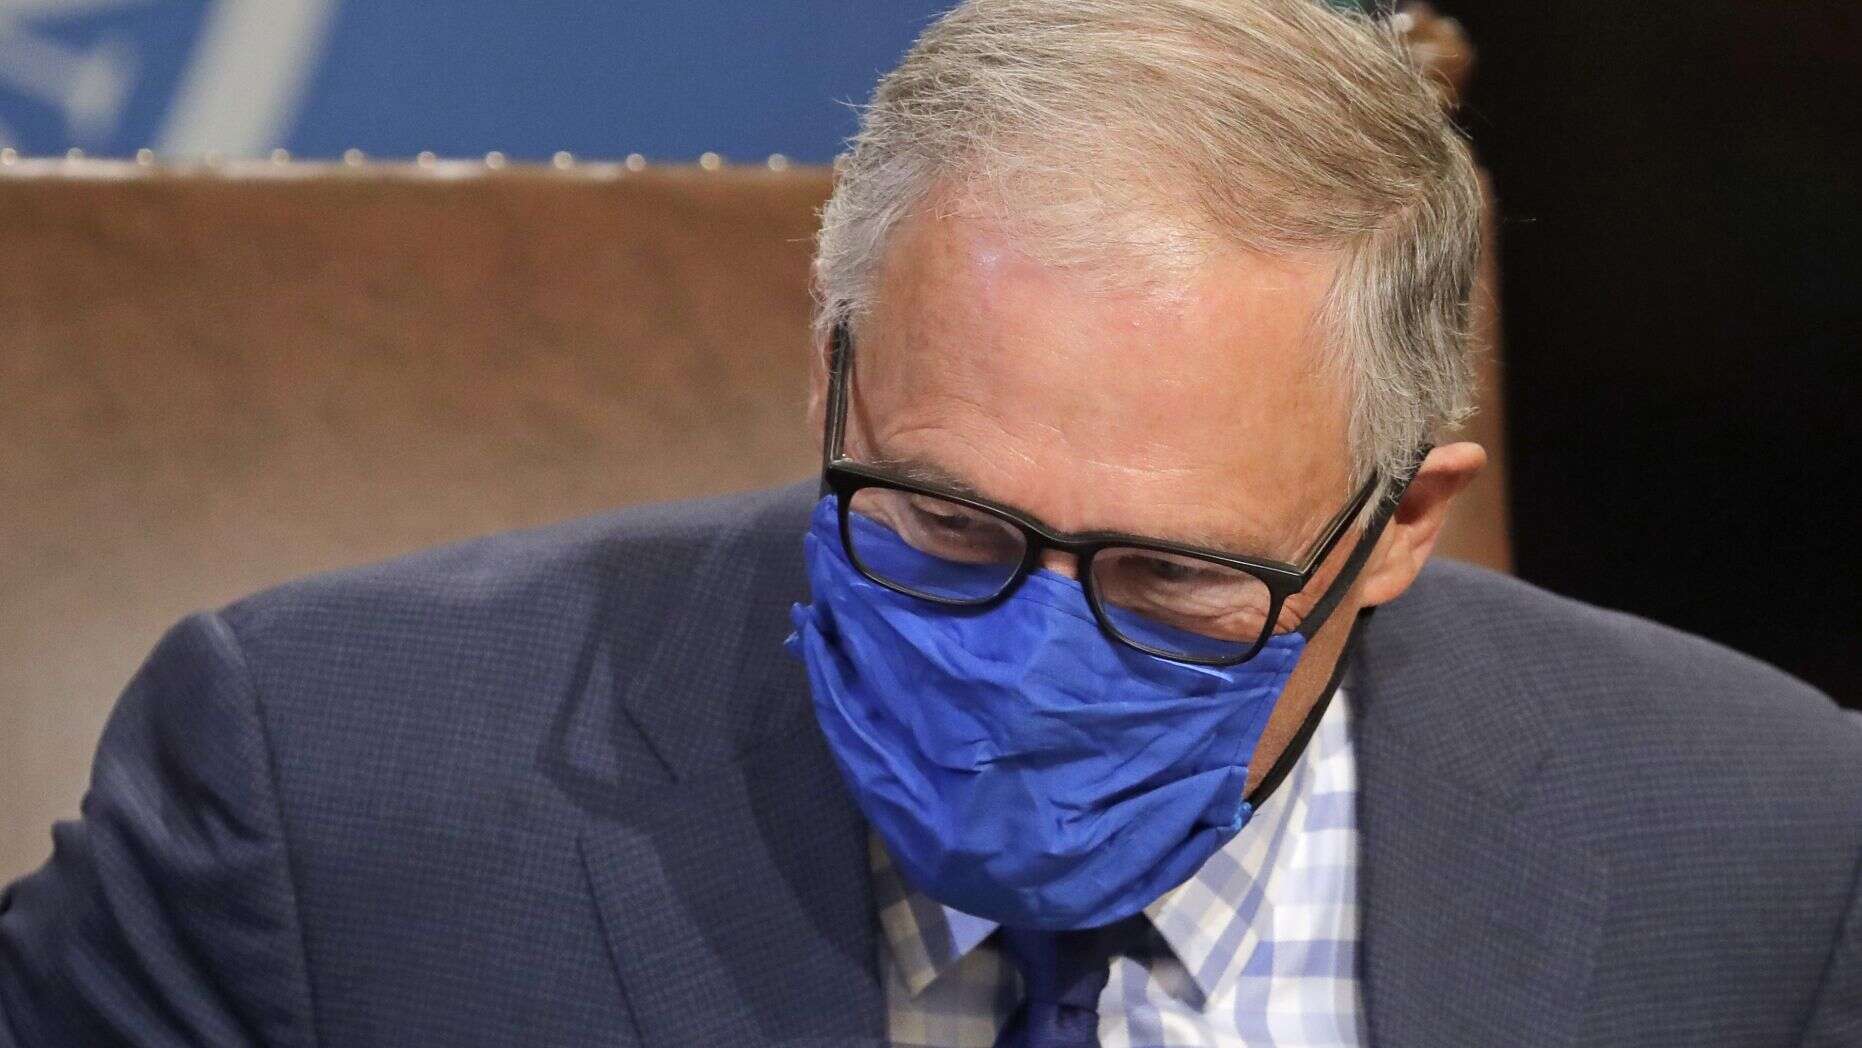 Washington ordena el uso de máscaras en todo el estado a partir del viernes